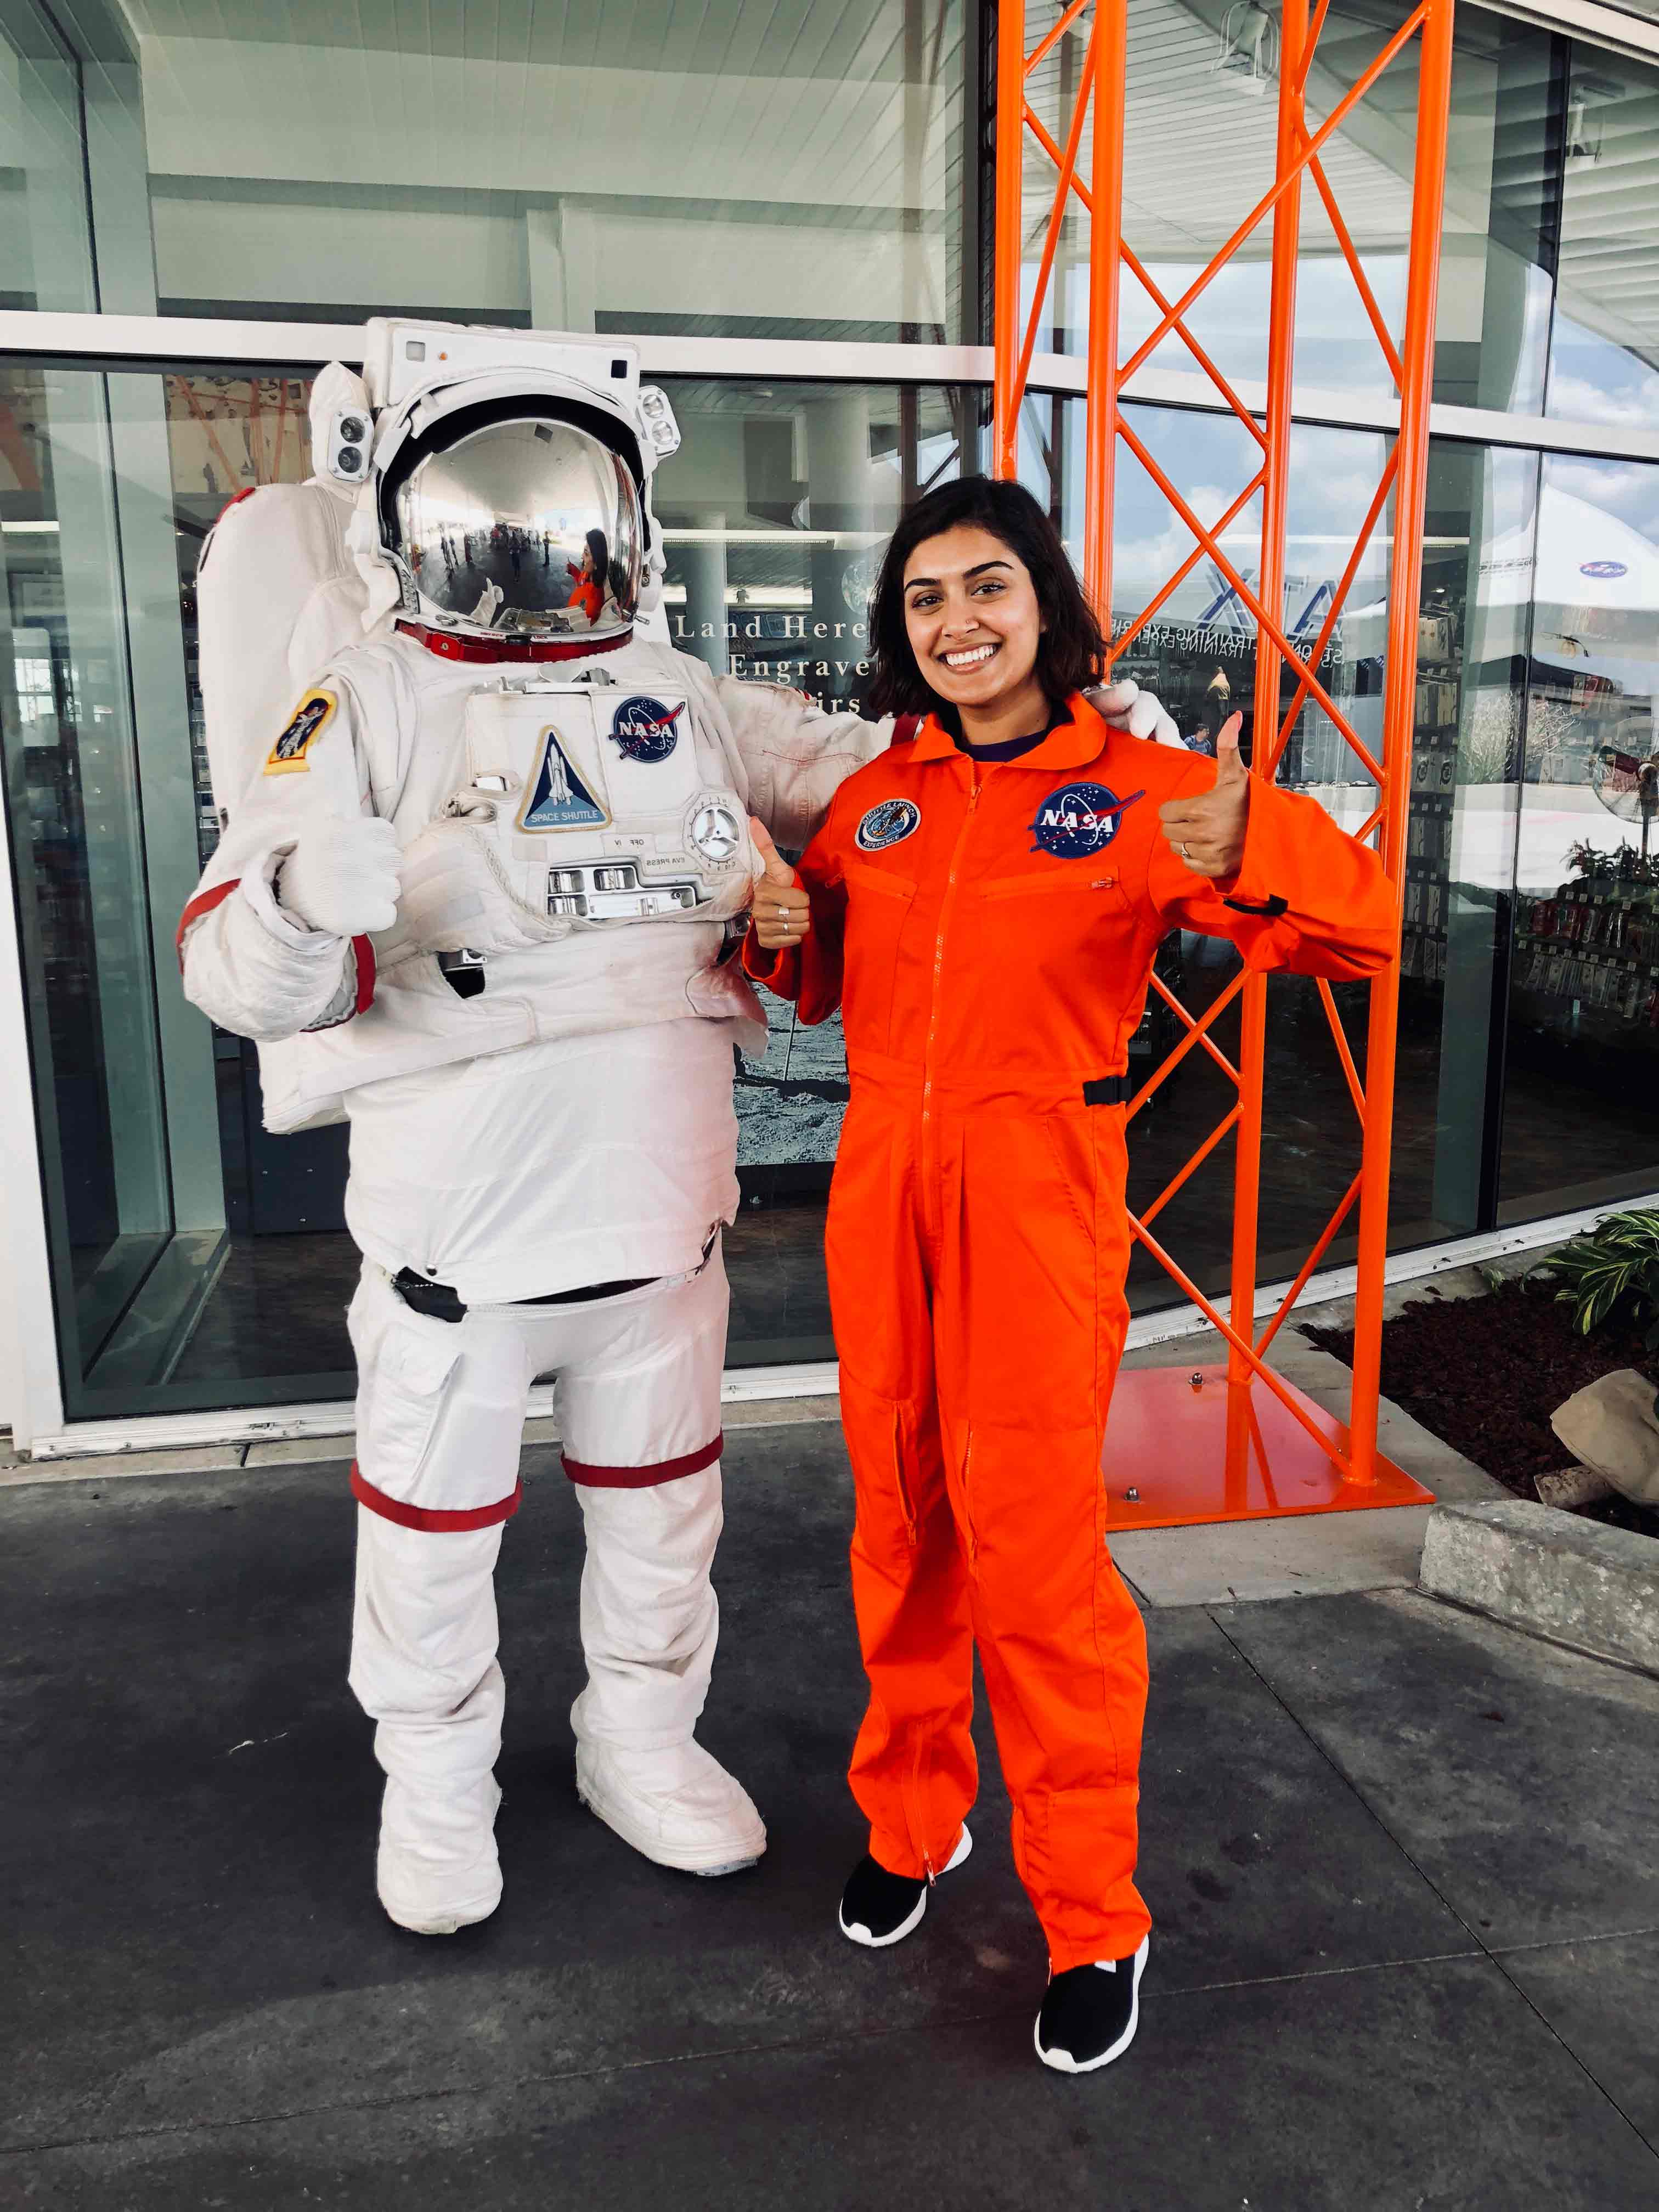 Tanya at her STEM internship at NASA